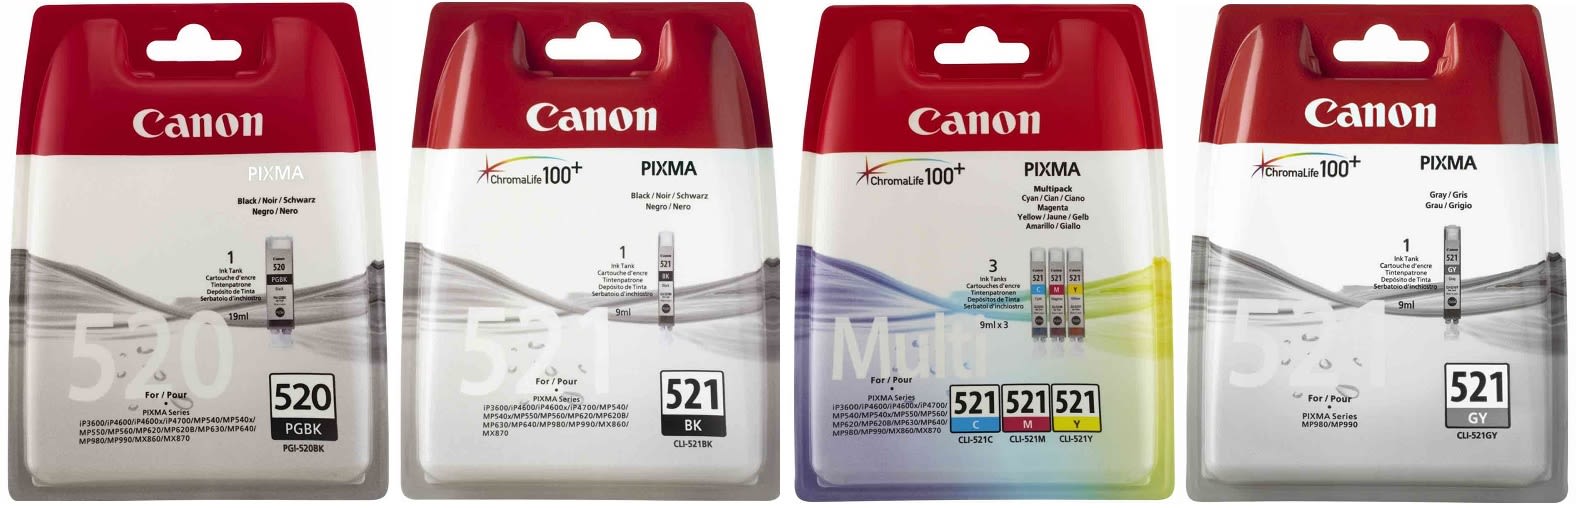 Картридж для Canon Pixma MP990 Купить комплект оригинальных чернил.